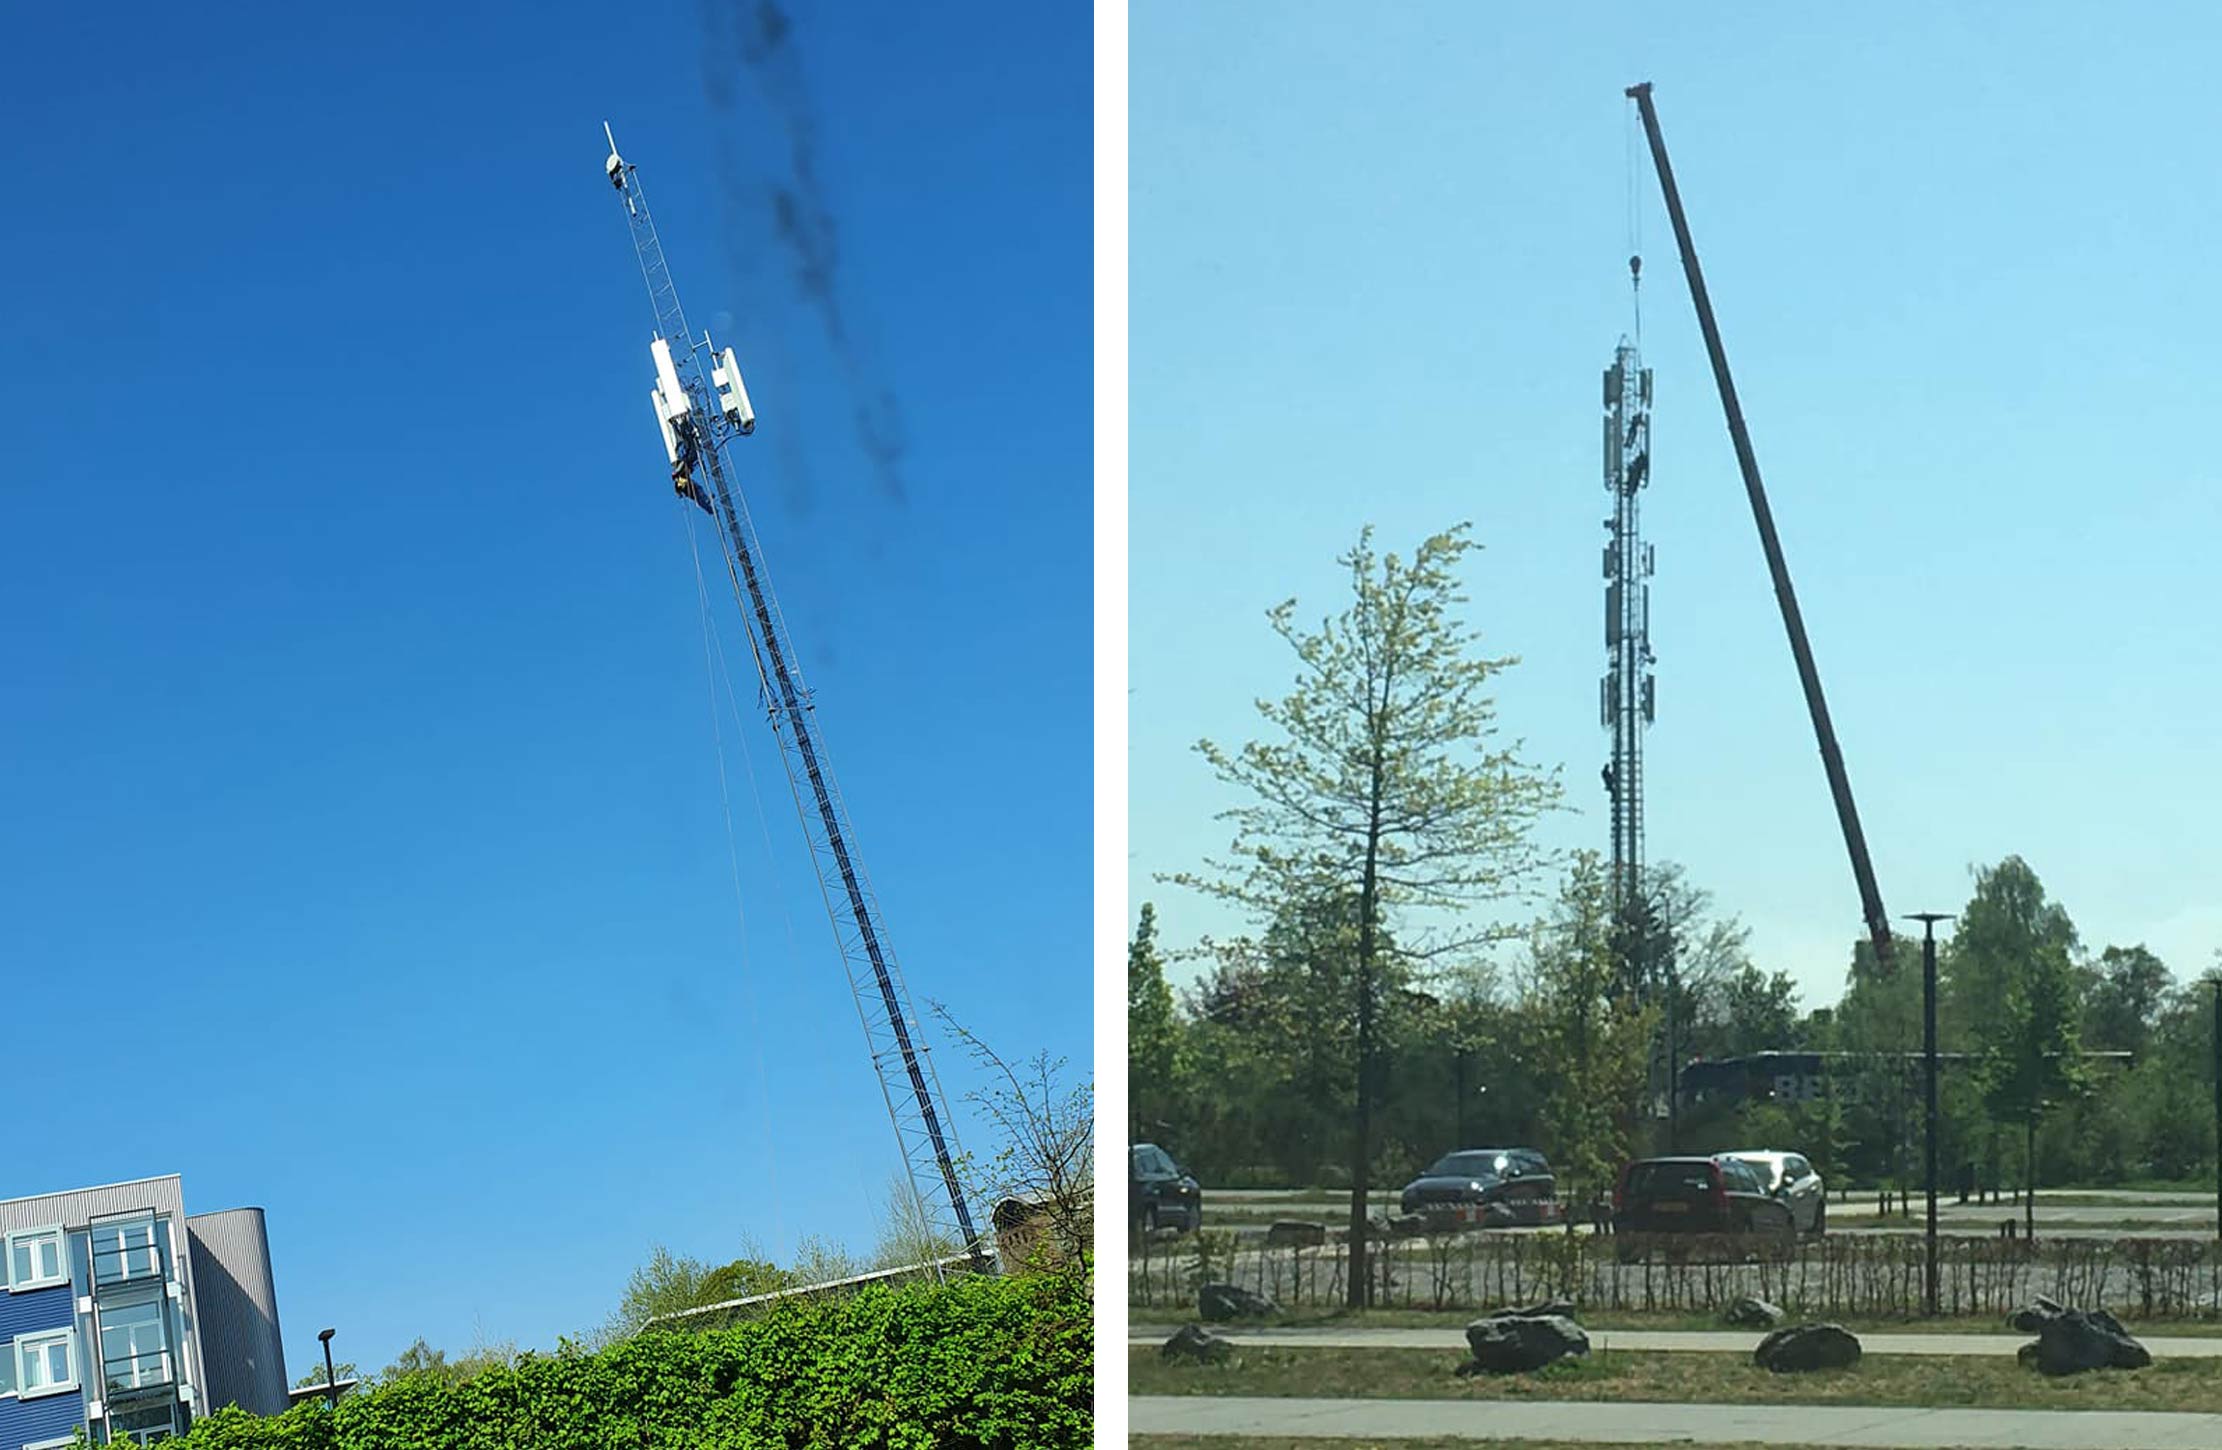 Installatie van nieuwe antennes en masten gedurende lockdown, maart/april 2020